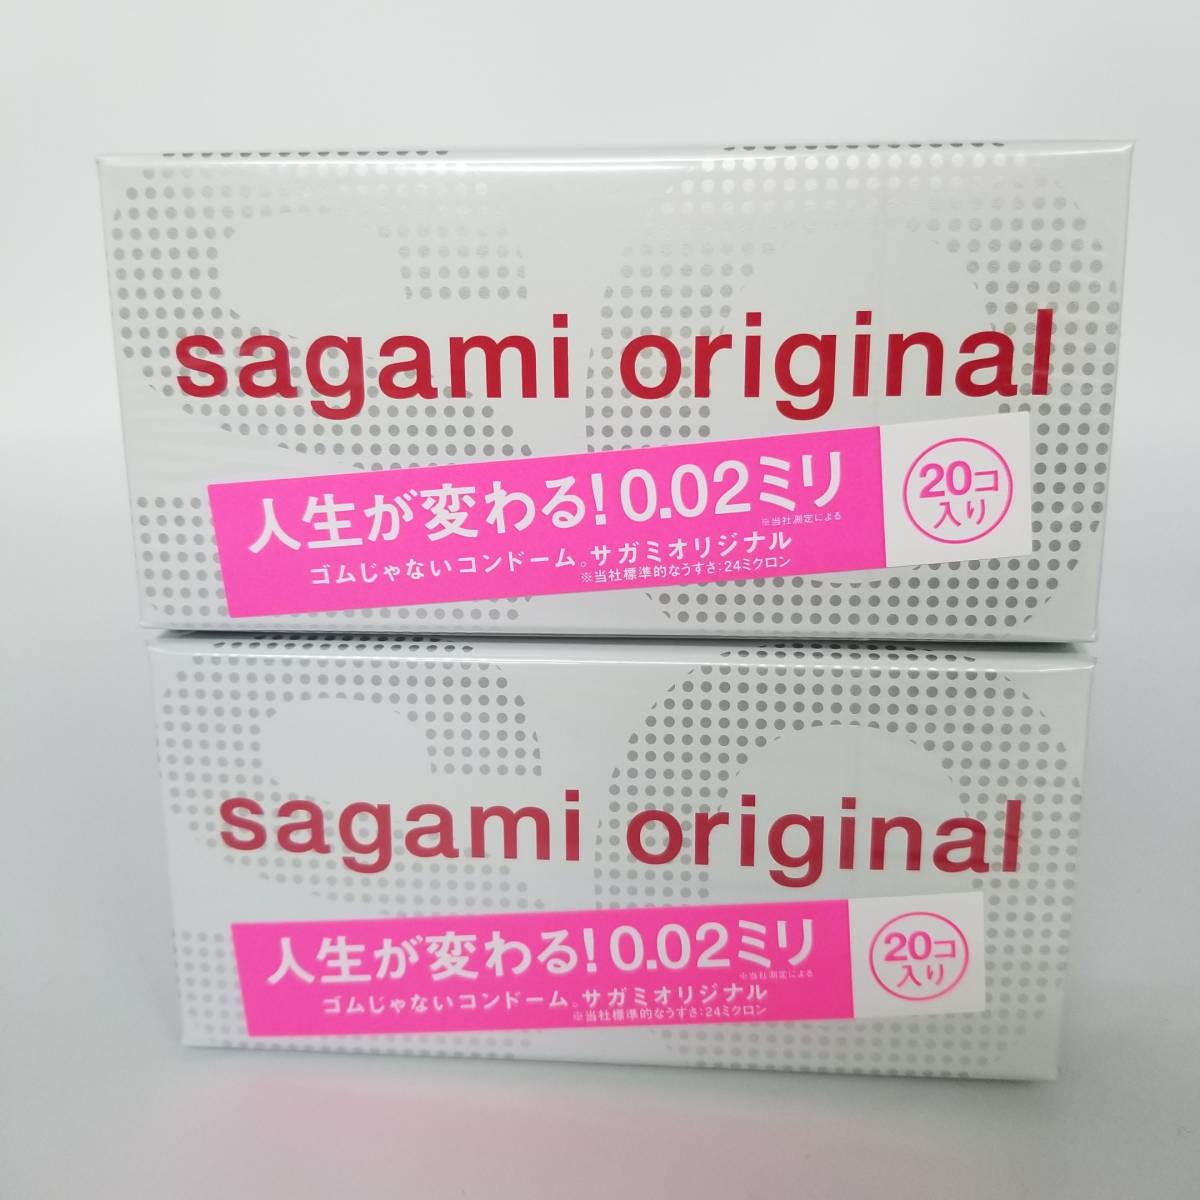 2箱セット 新品未使用未開封 サガミオリジナル 002 1箱20個入 コンドーム sagami original サガミオリジナル 避妊具 